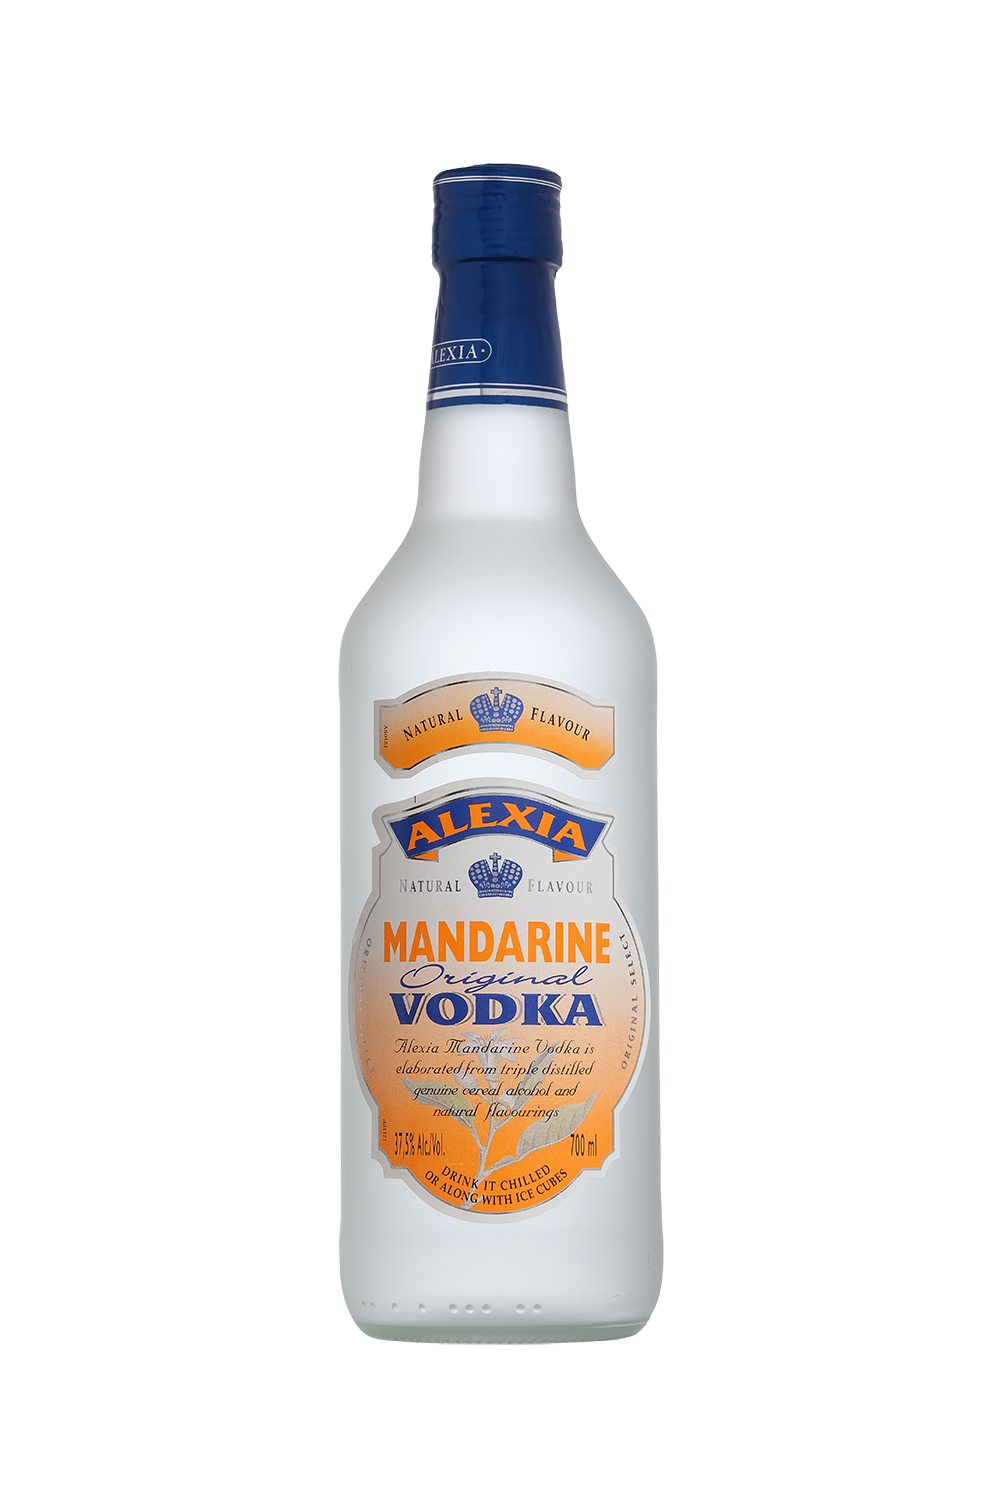 Vodka Mandarine Alexia 070 37.5 0V1Z Web